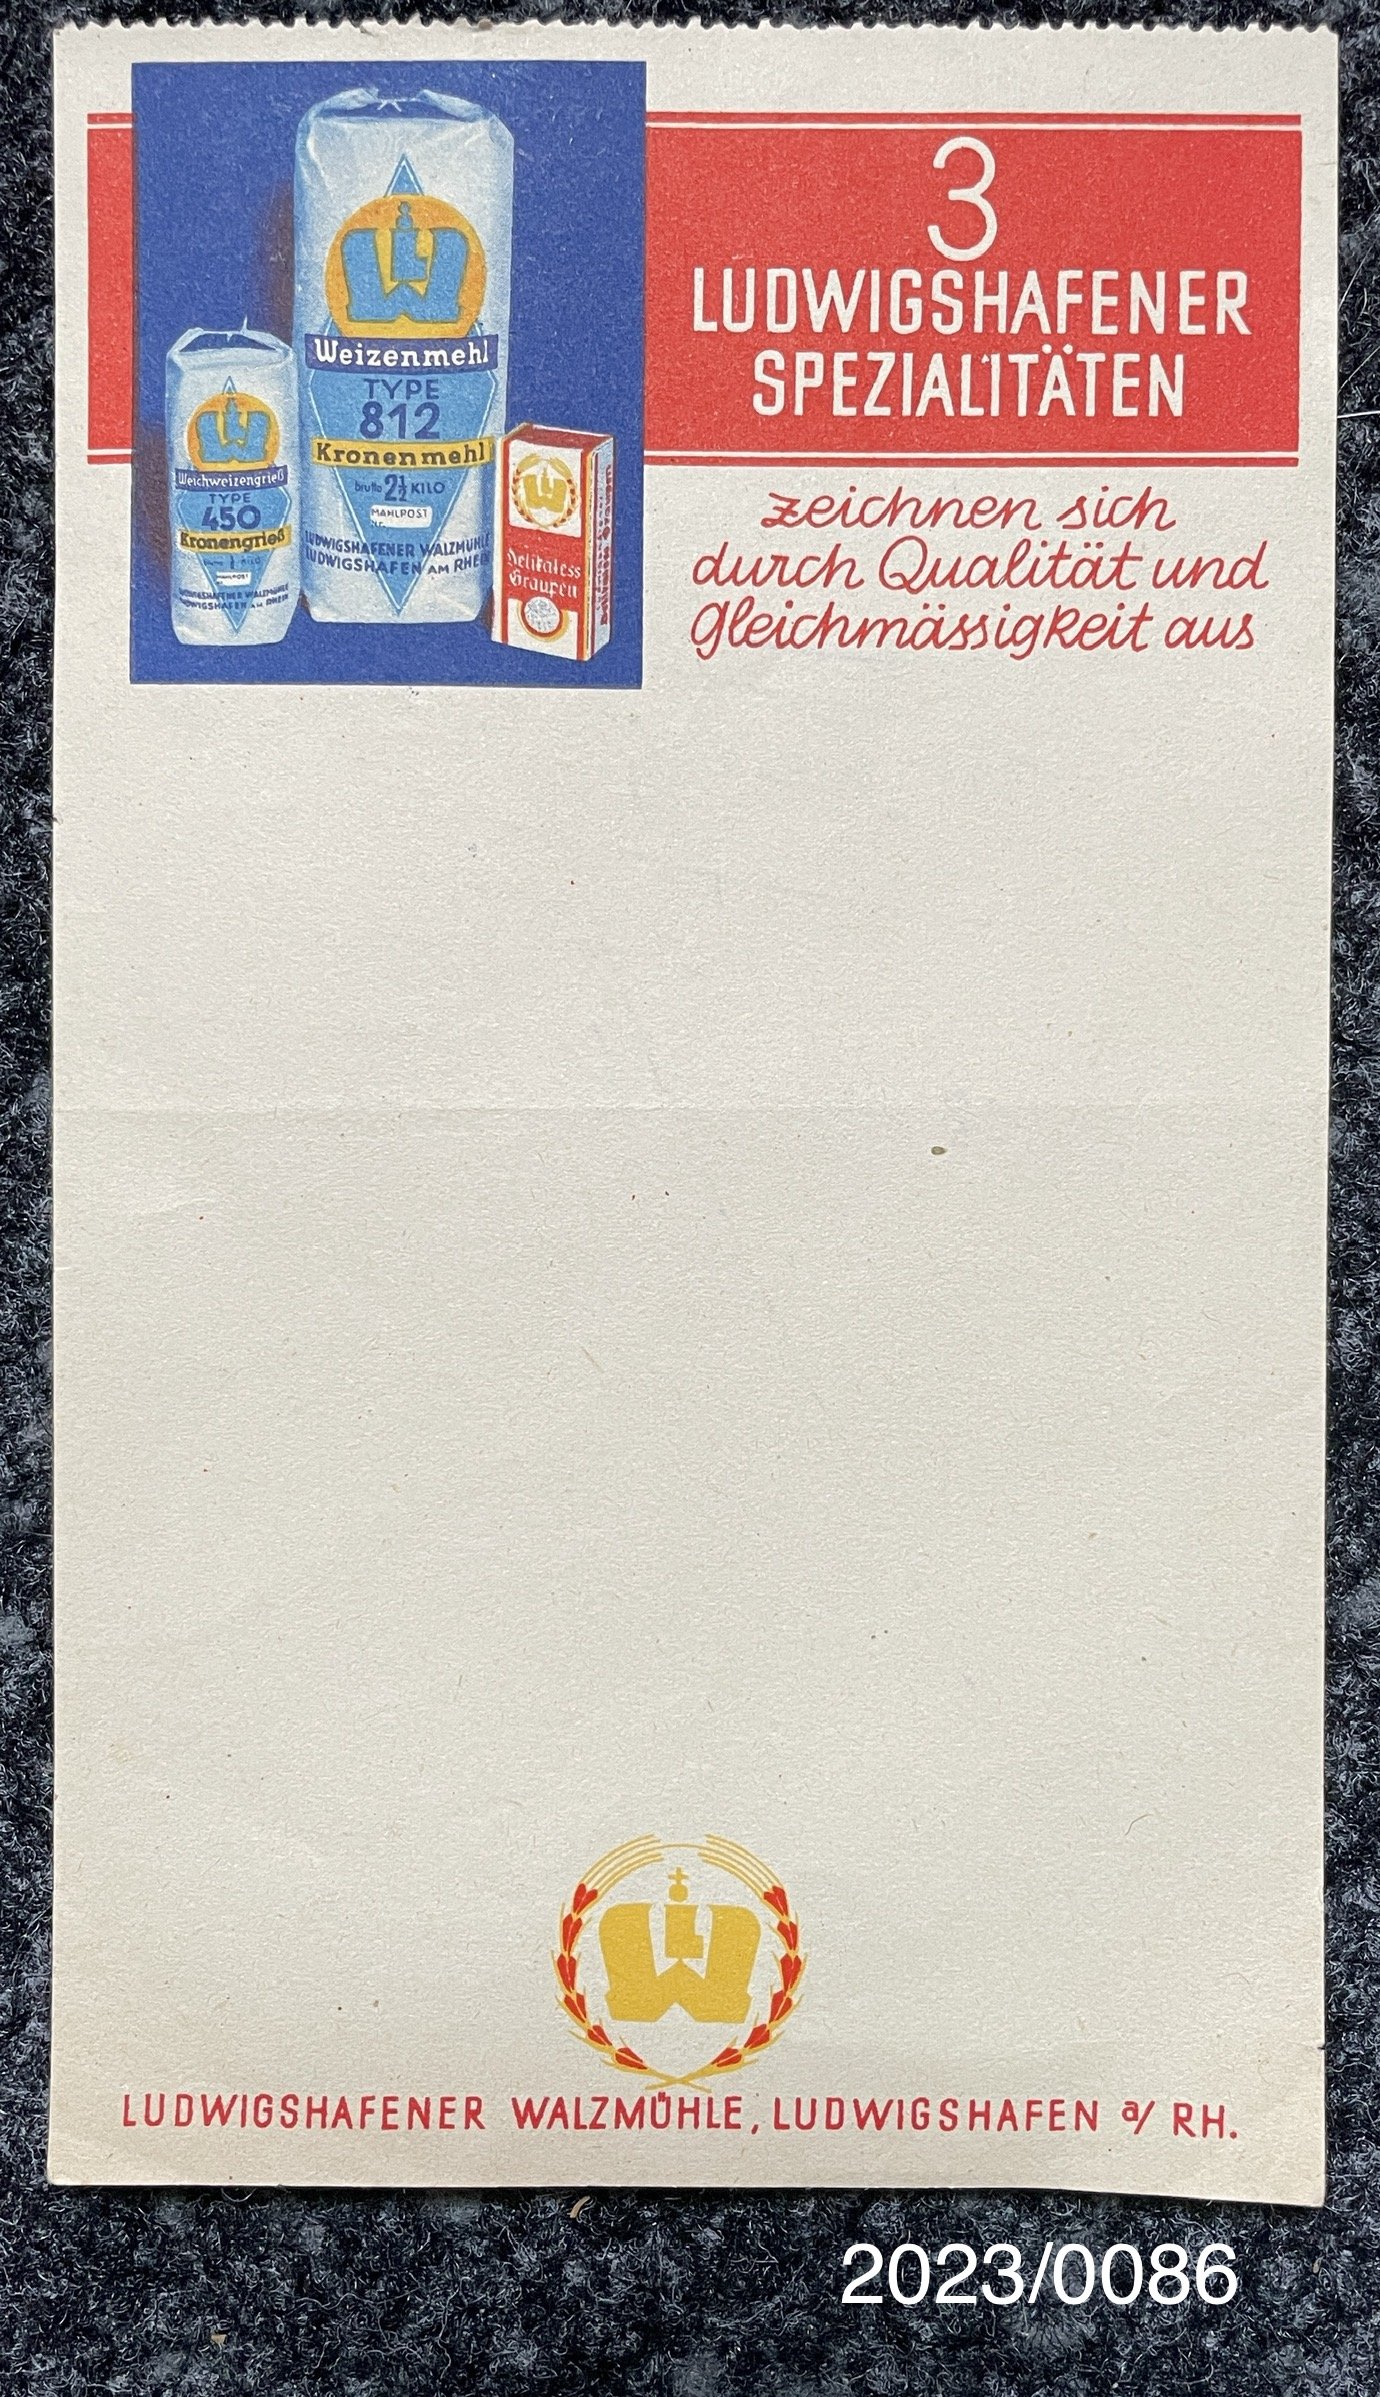 Notizzettel "Ludwigshafener Spezialitäten" mit handschriftlicher Addition 1941 (Stadtmuseum Bad Dürkheim im Kulturzentrum Haus Catoir CC BY-NC-SA)